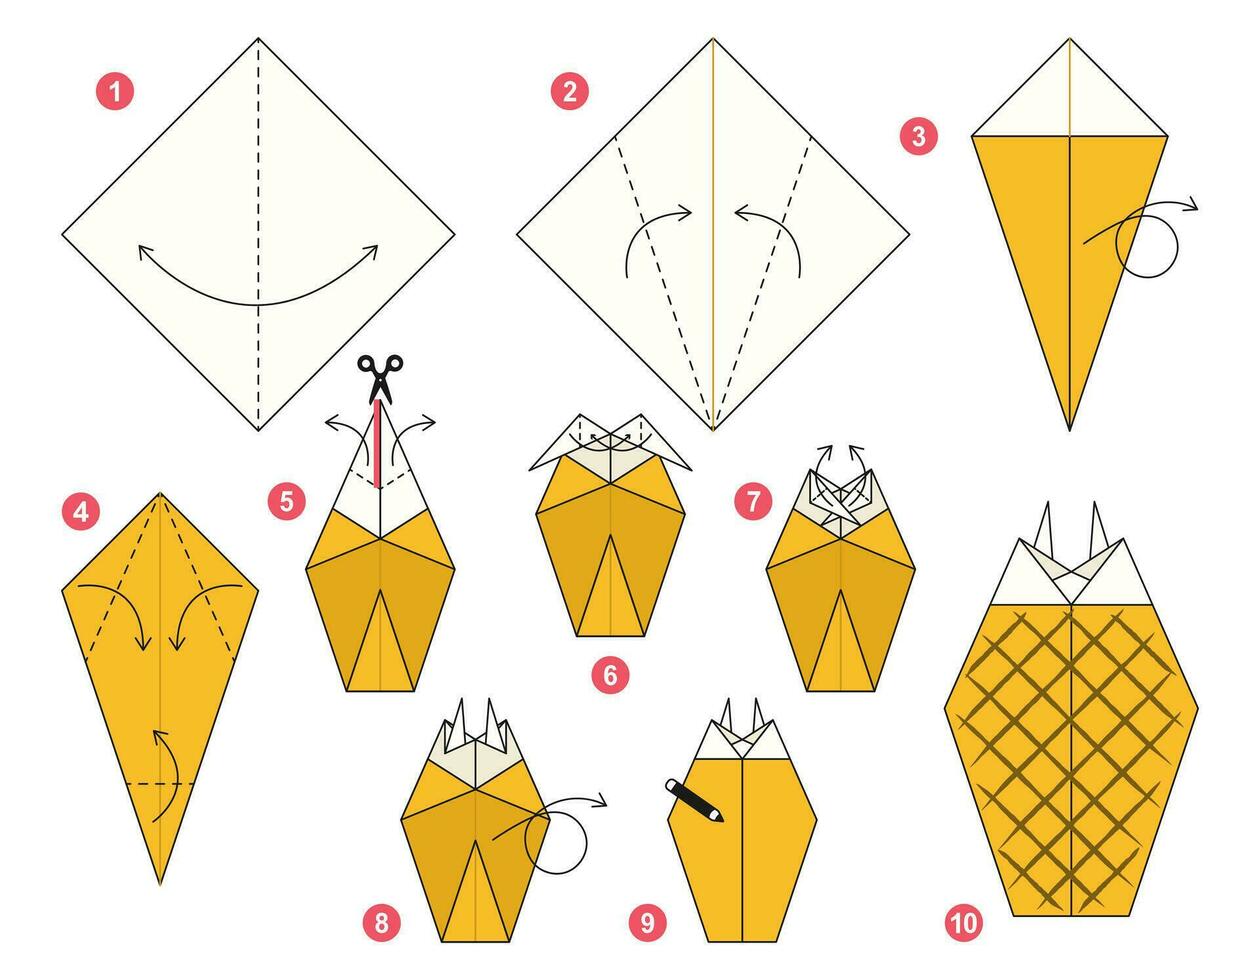 Ananas Origami planen Lernprogramm ziehen um Modell. Origami zum Kinder. Schritt durch Schritt Wie zu machen ein süß Origami Frucht. Vektor Illustration.